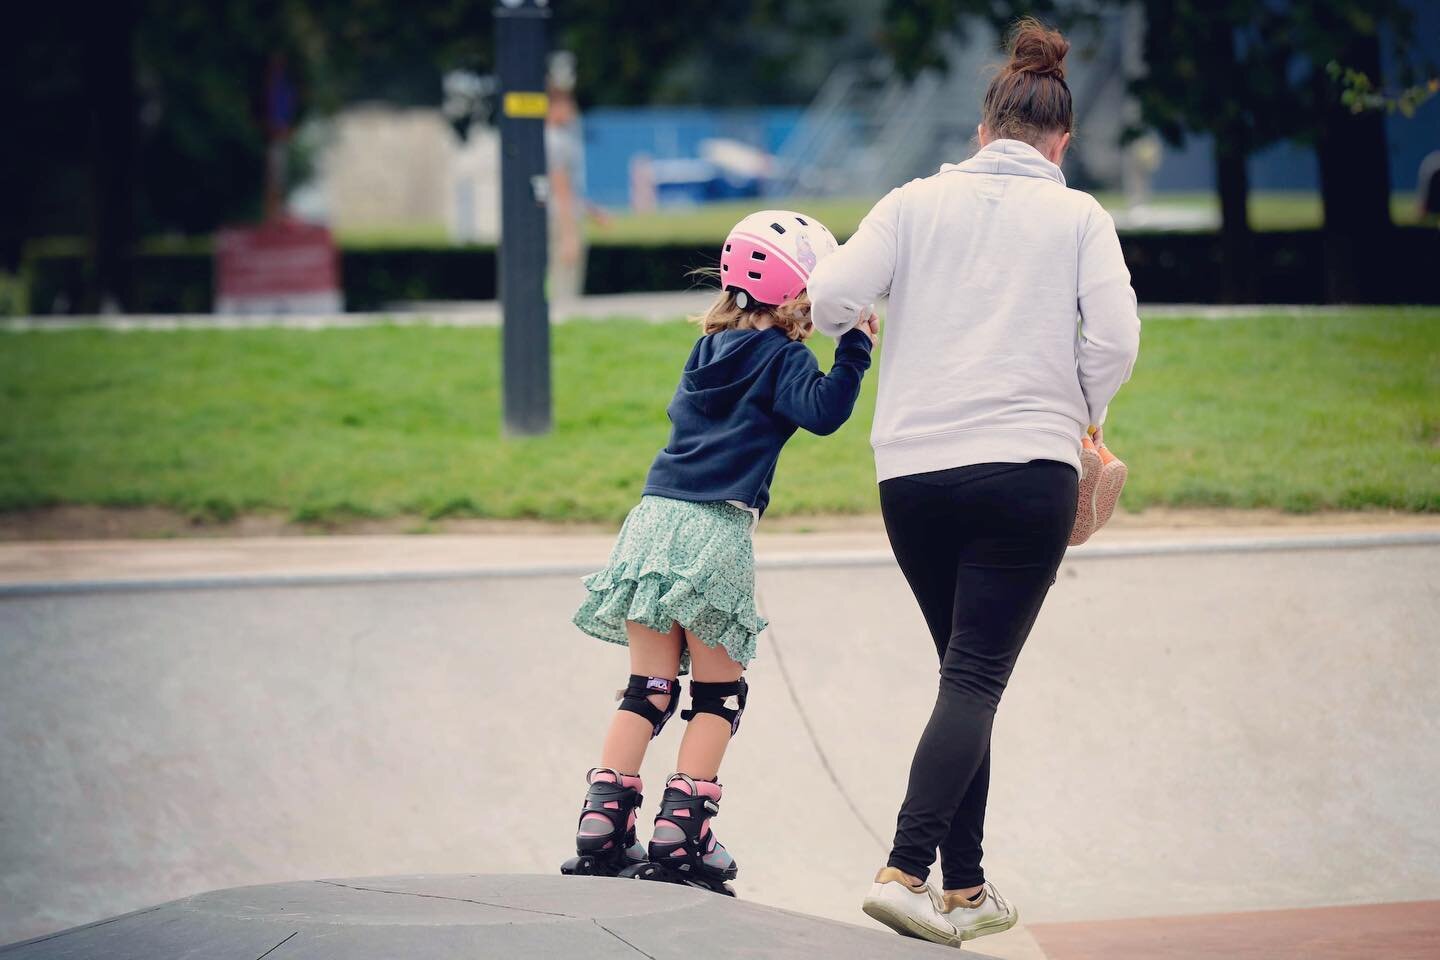 De eerste stap is vaak de moeilijkste. Een helpende mama hand kan wonderen doen ☺️ vallen-opstaan-volhouden en blijven rollen rollen en rollen! Fijn skate weekend iedereen 🙌 

#skate9000 #skategent #inlineskating #urbansports #skateparkblaarmeersen 